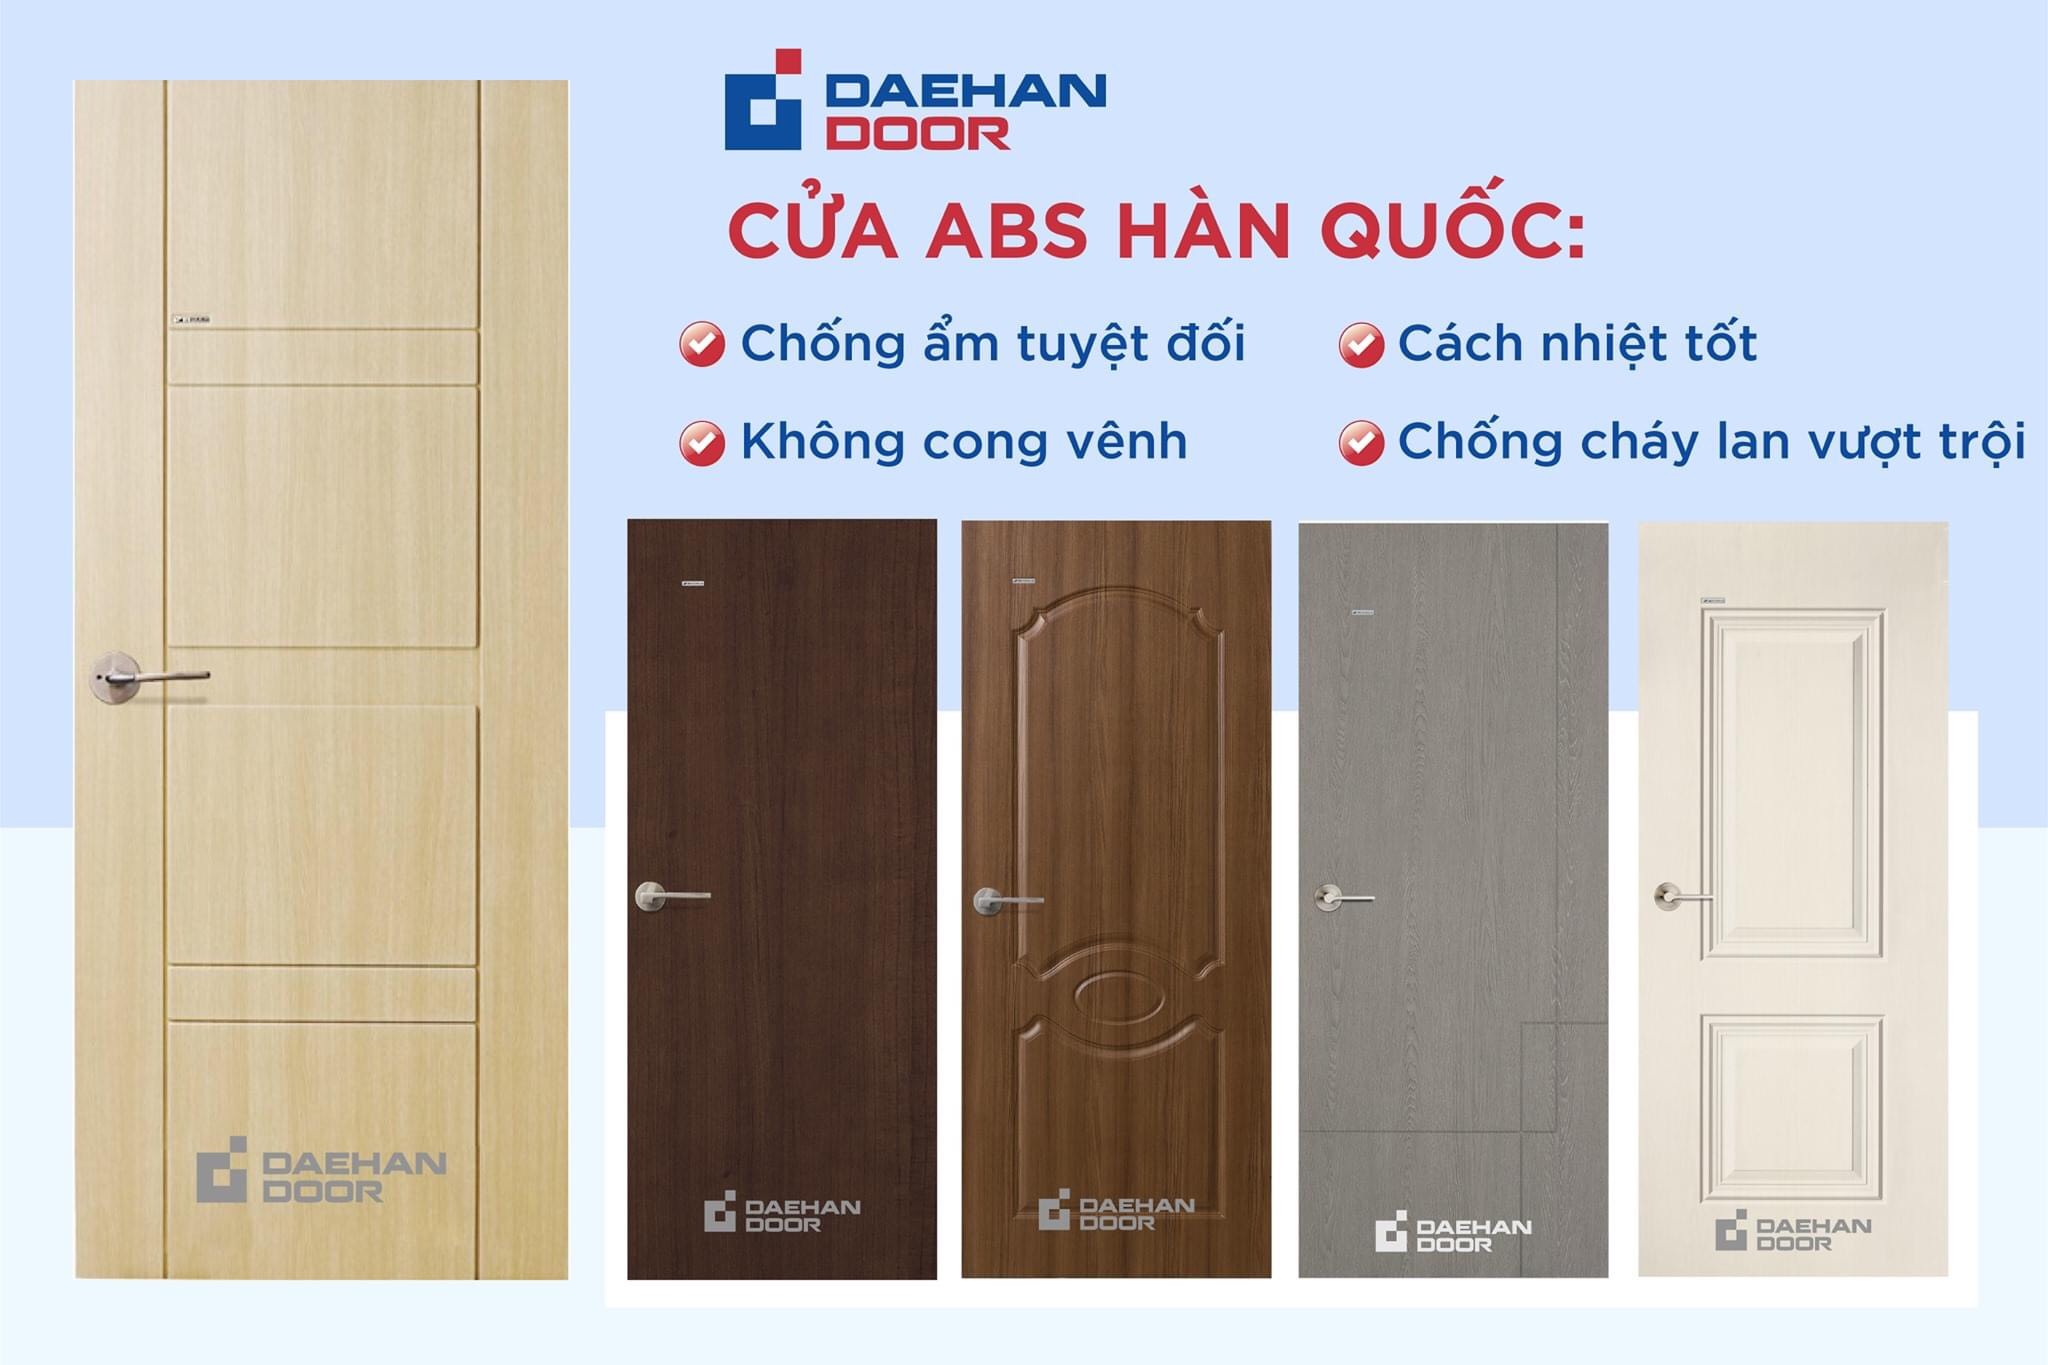  Cửa nhựa ABS Daehan và cửa gỗ nhựa Composite khác nhau thế nào?